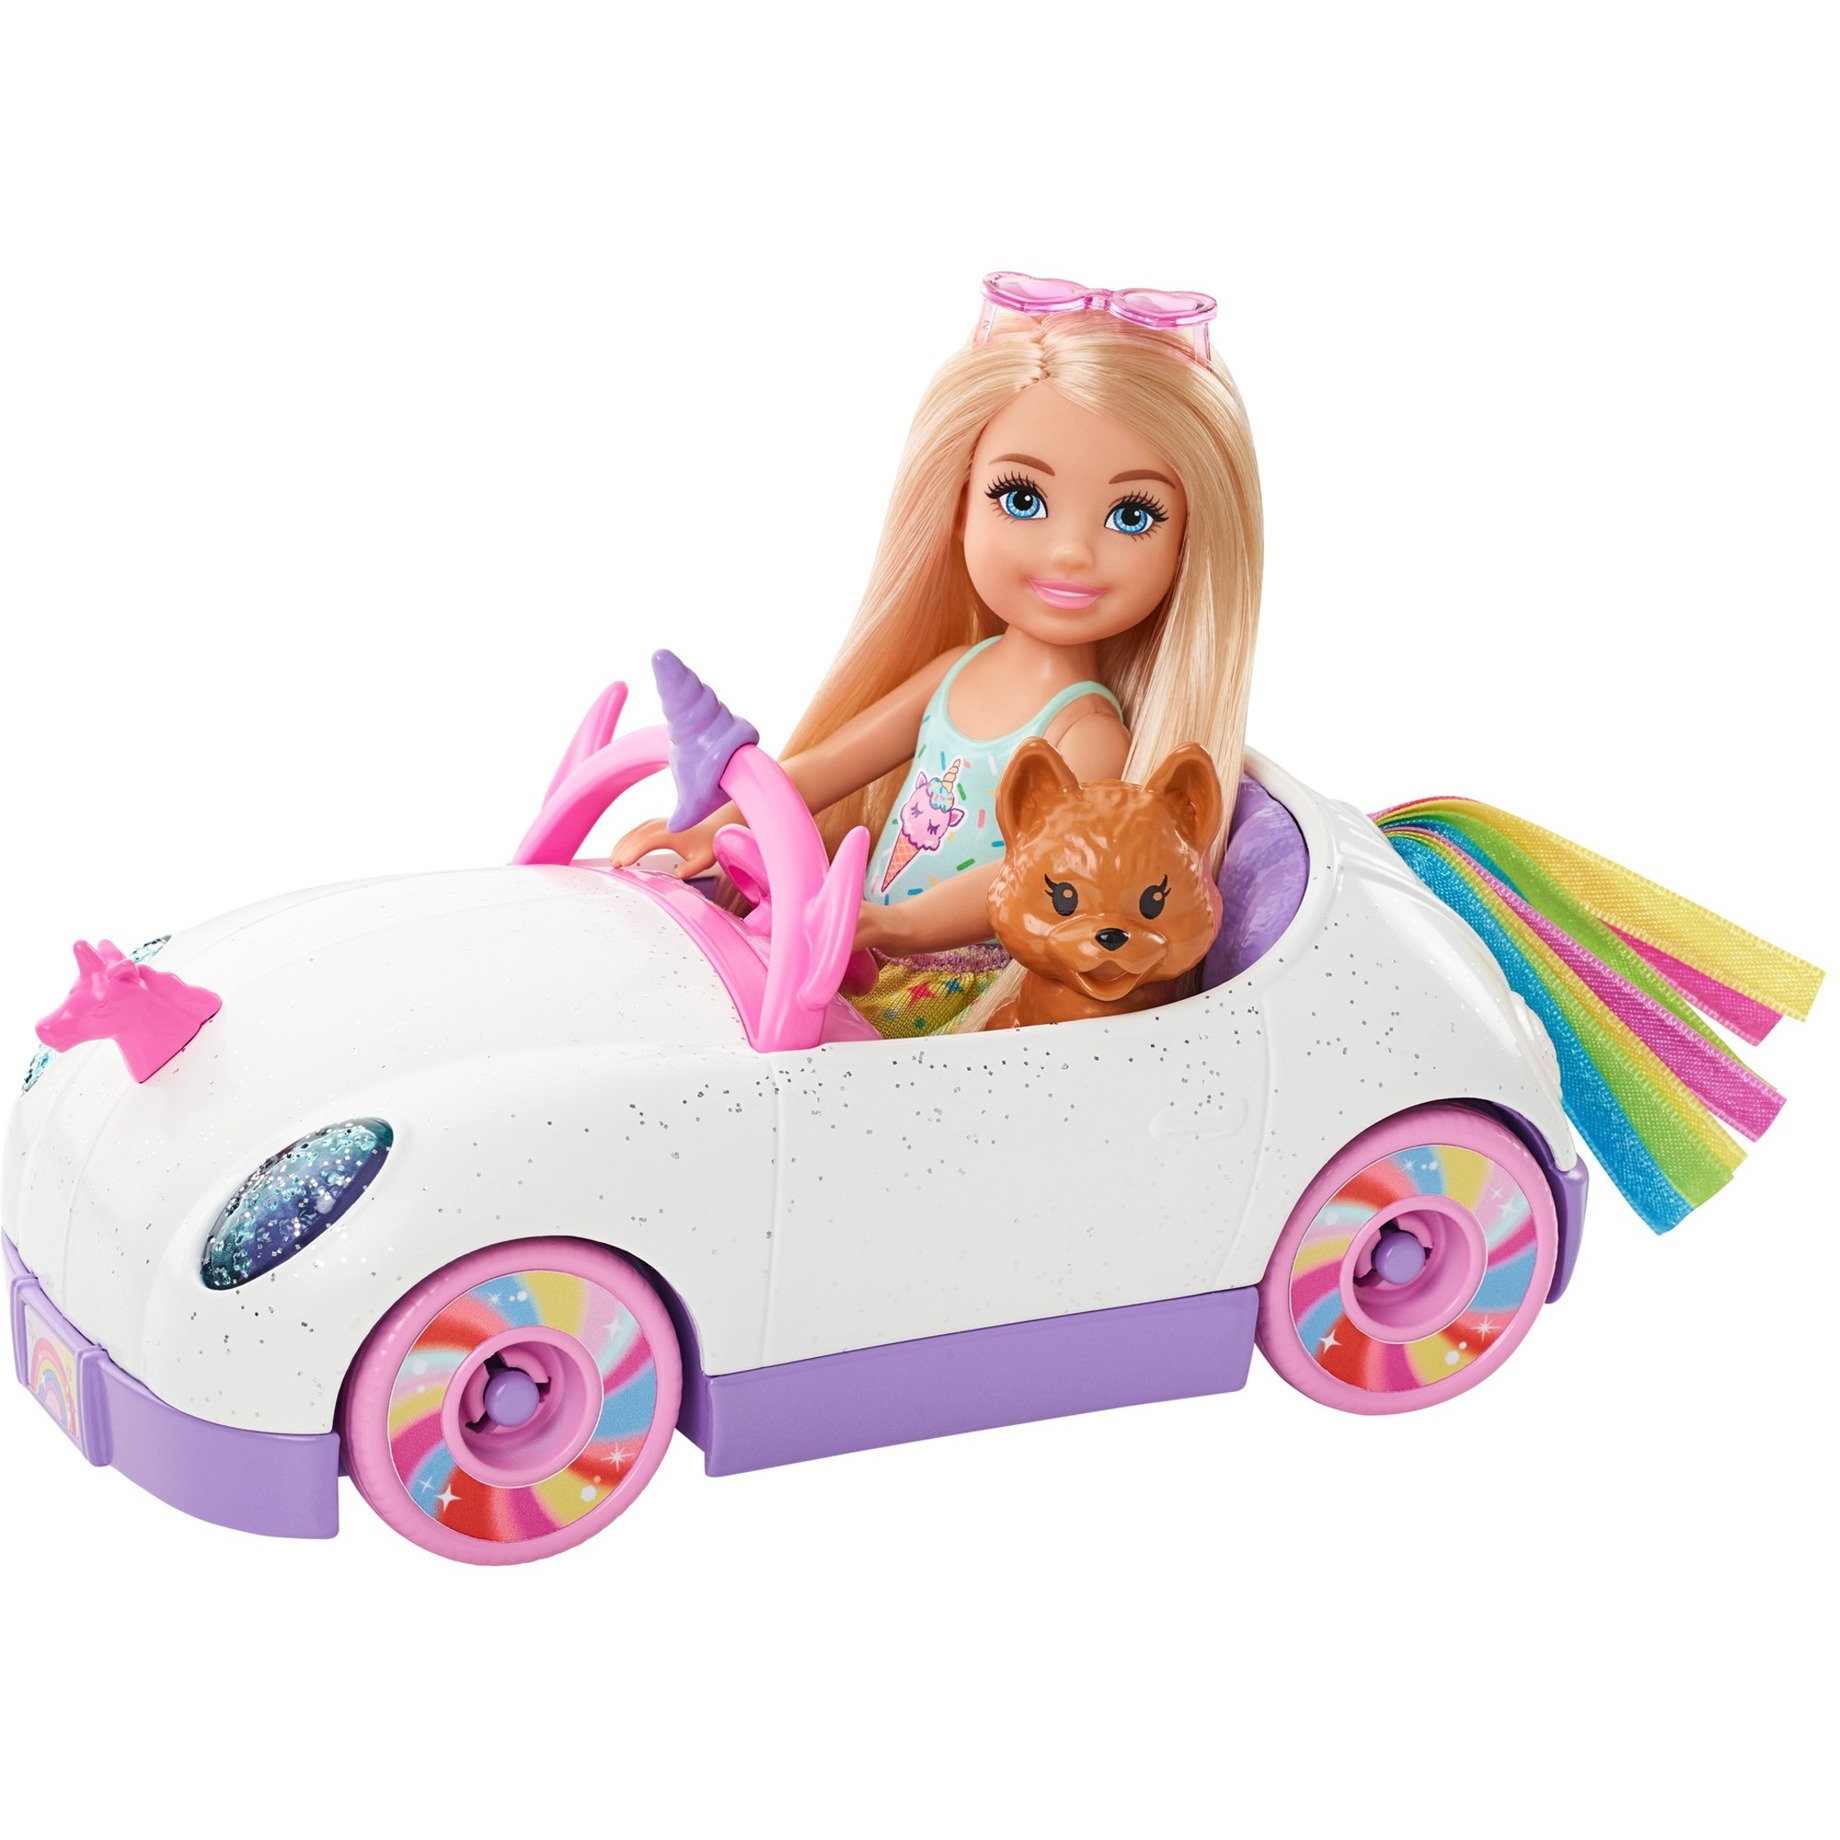 Image of Alternate - Barbie Chelsea Puppe Spiel-Set online einkaufen bei Alternate